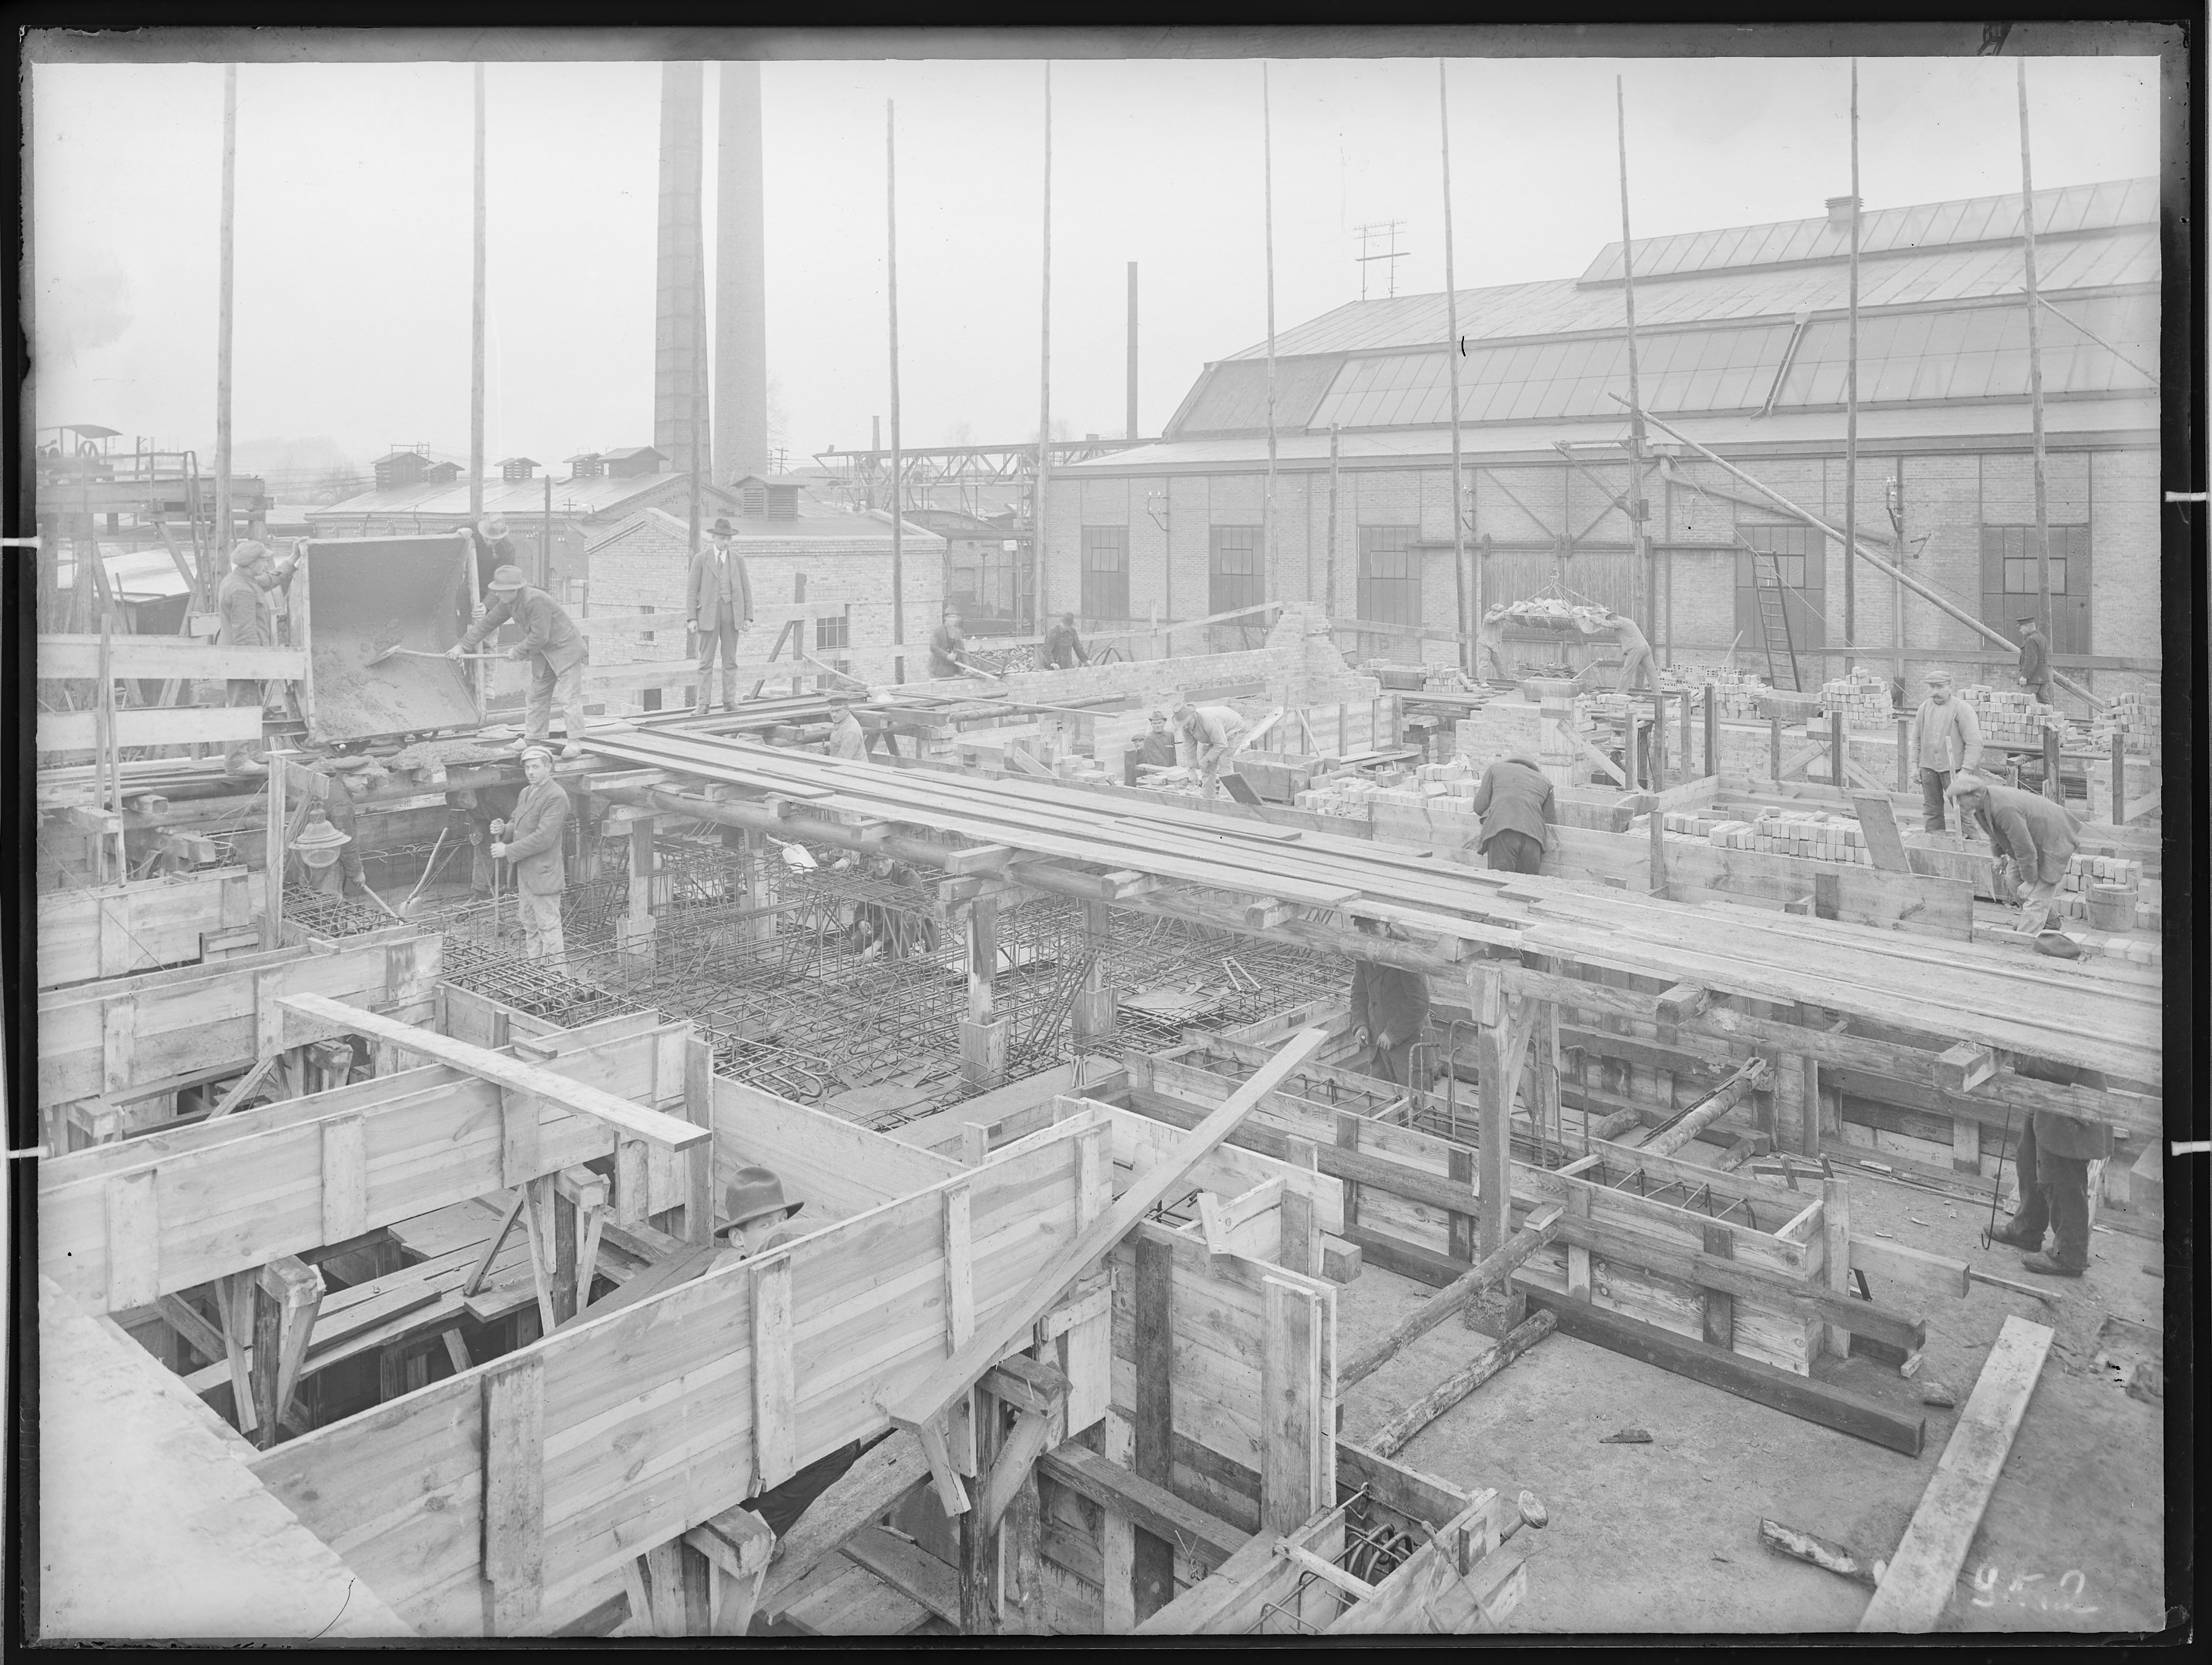 Fotografie: Waggon- und Maschinenbau AG Görlitz (Außenansicht), Werkhalle im Bau, mit Personen, um 1925? (Verkehrsmuseum Dresden CC BY-NC-SA)